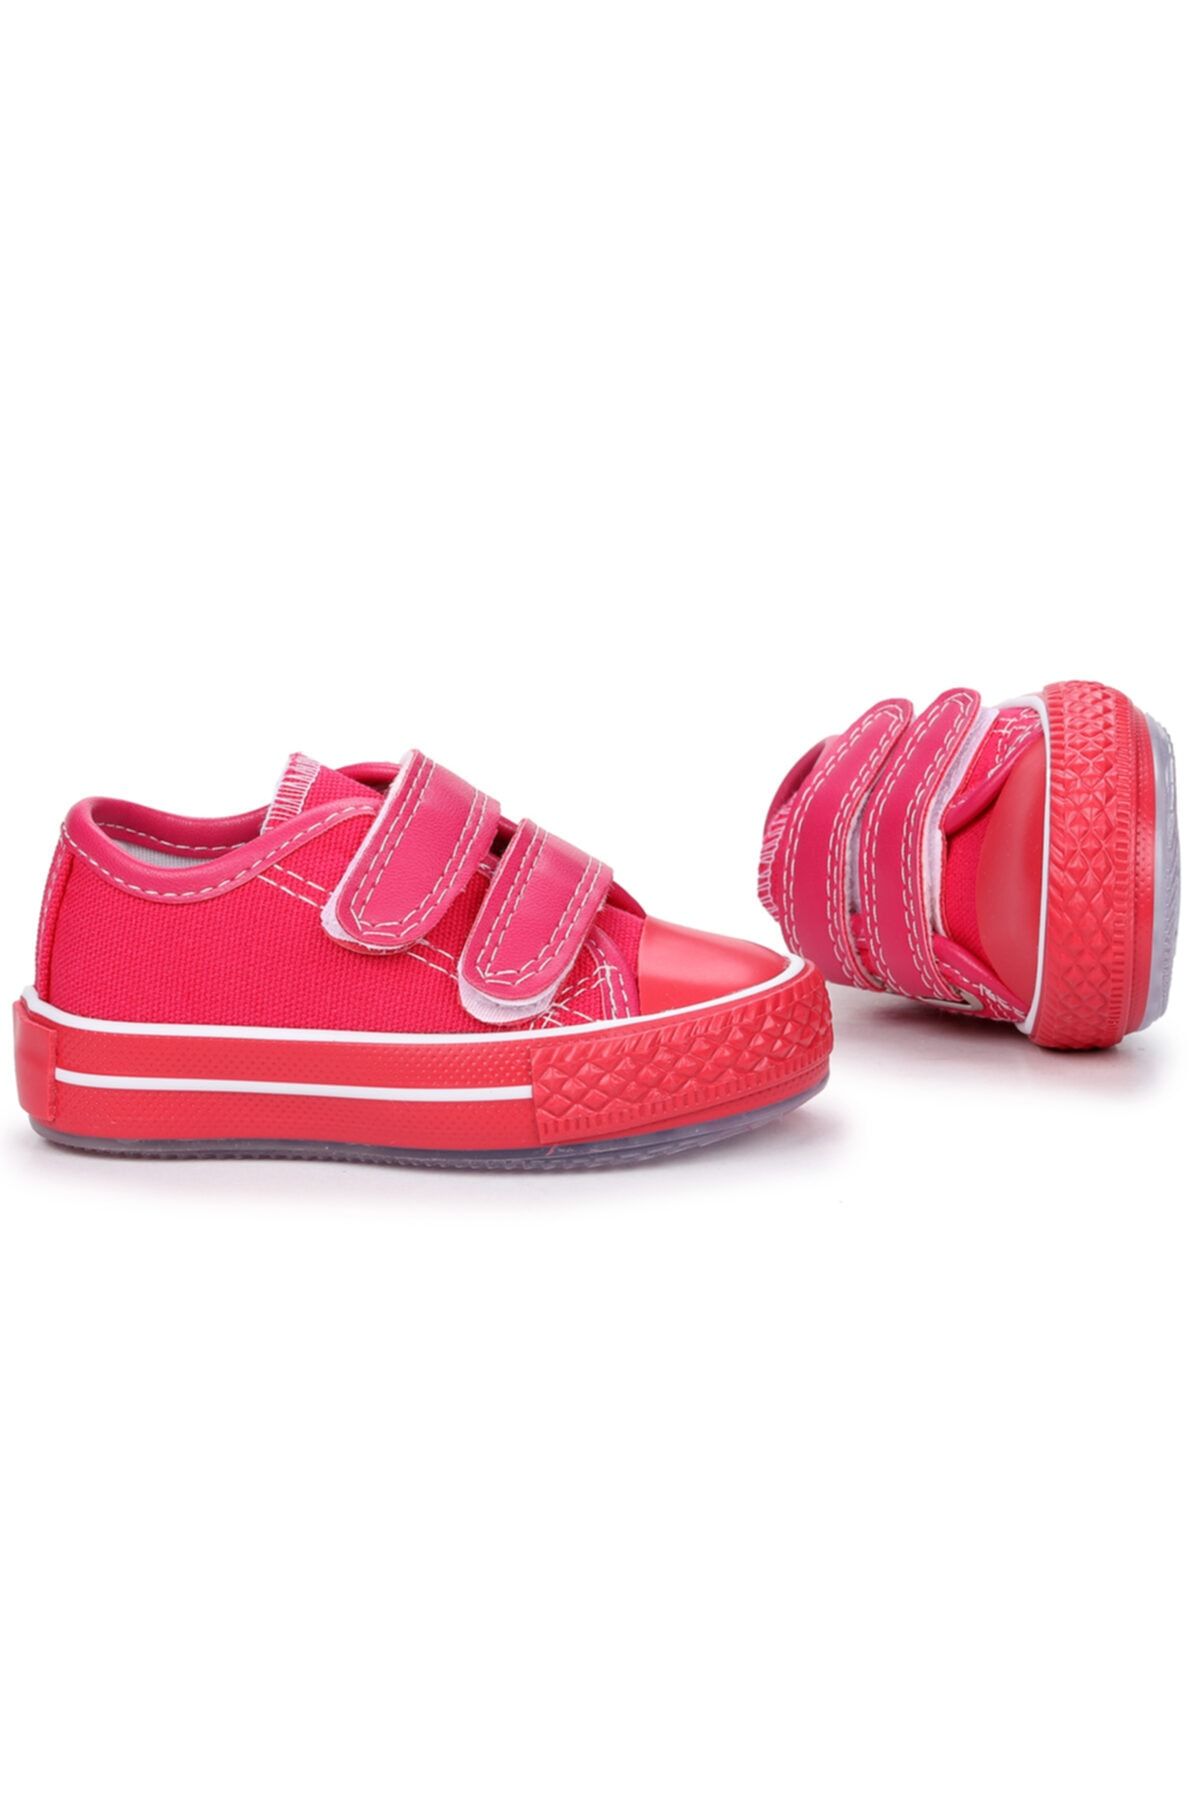 Kiko Kids Pembe - Alf 133 Renkli Sargı Işıklı Kız/erkek Çocuk Keten Spor Ayakkabı